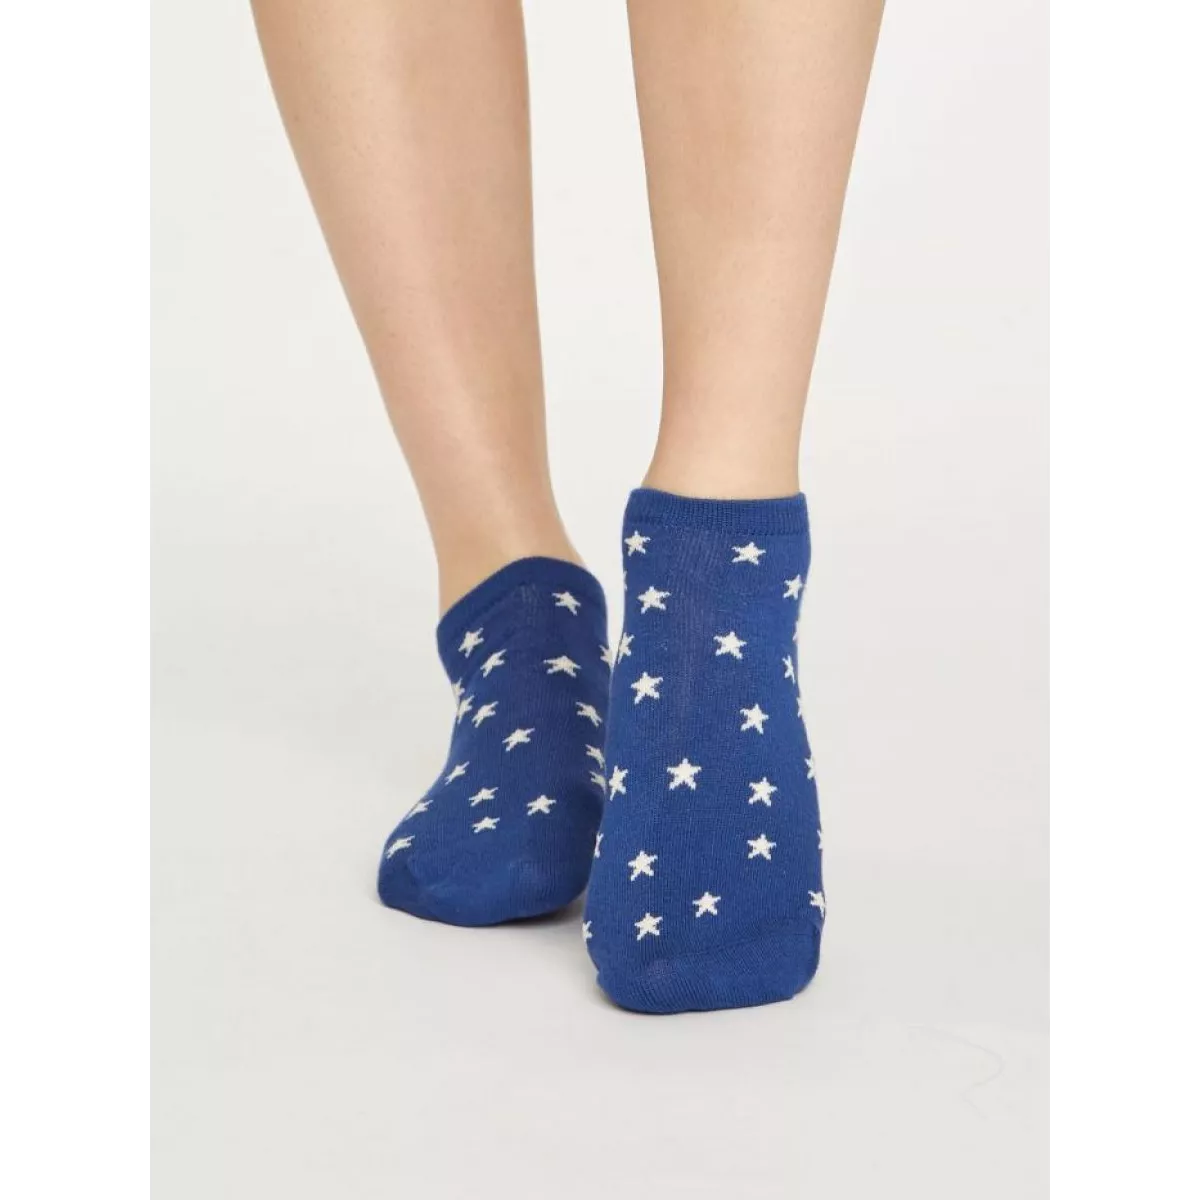 Socquettes bleues avec des étoiles, matières bambou et coton biologique